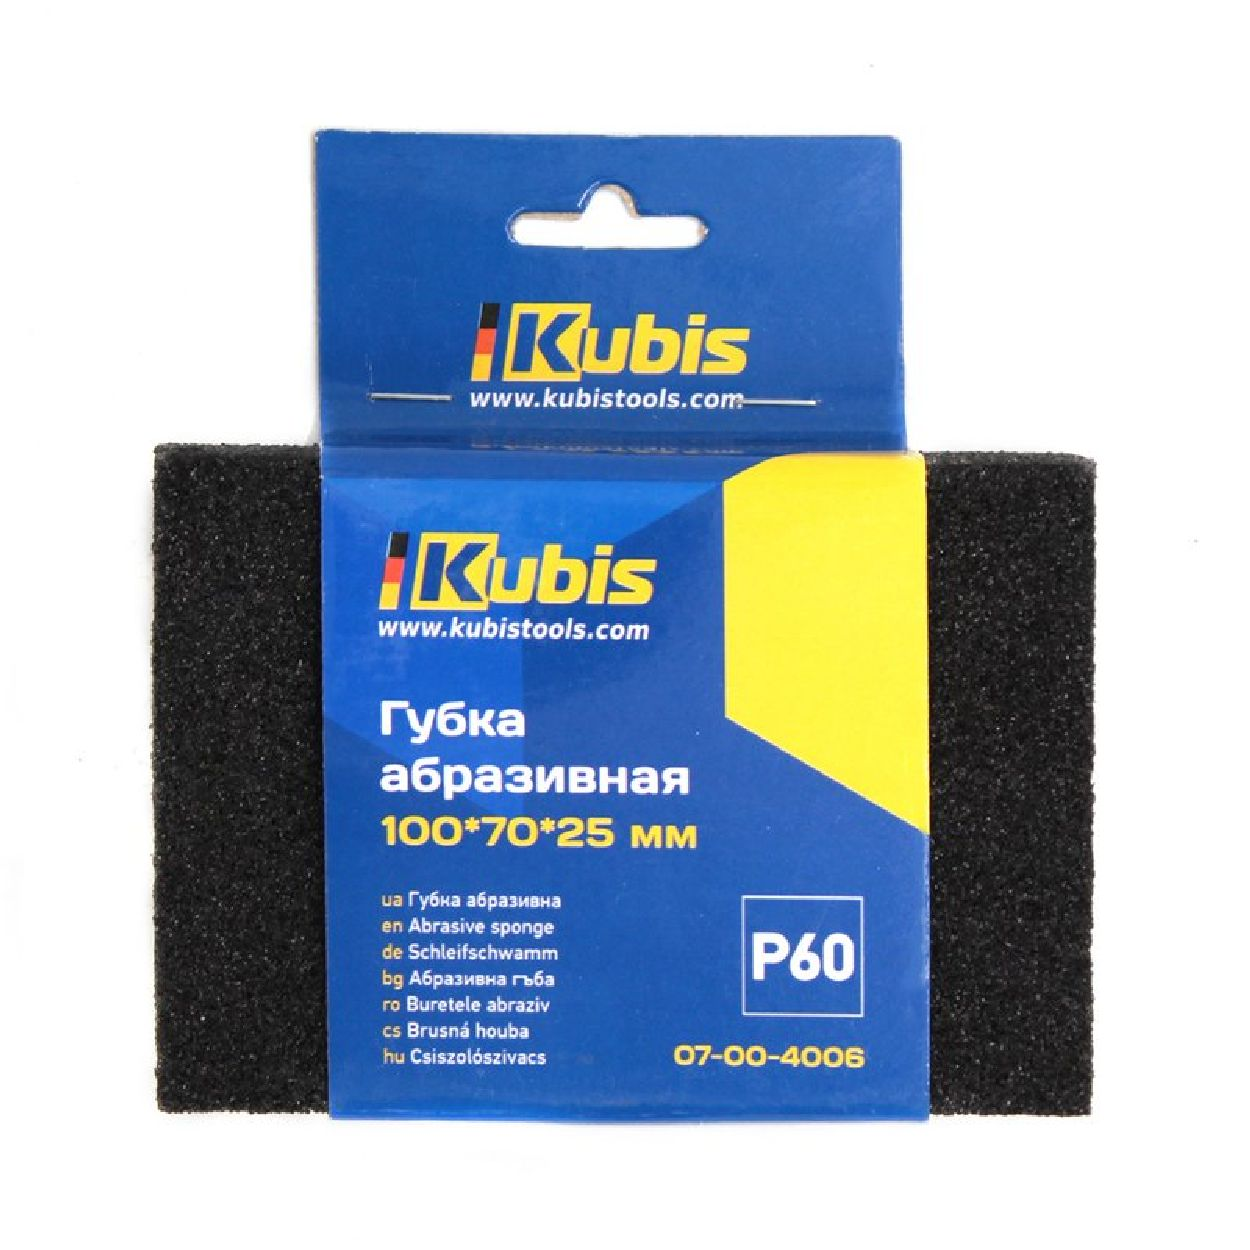 INBUSCO / KUBIS KB07-00-4006 Multifunktionswerkzeug, Transparent Schleifschwamm